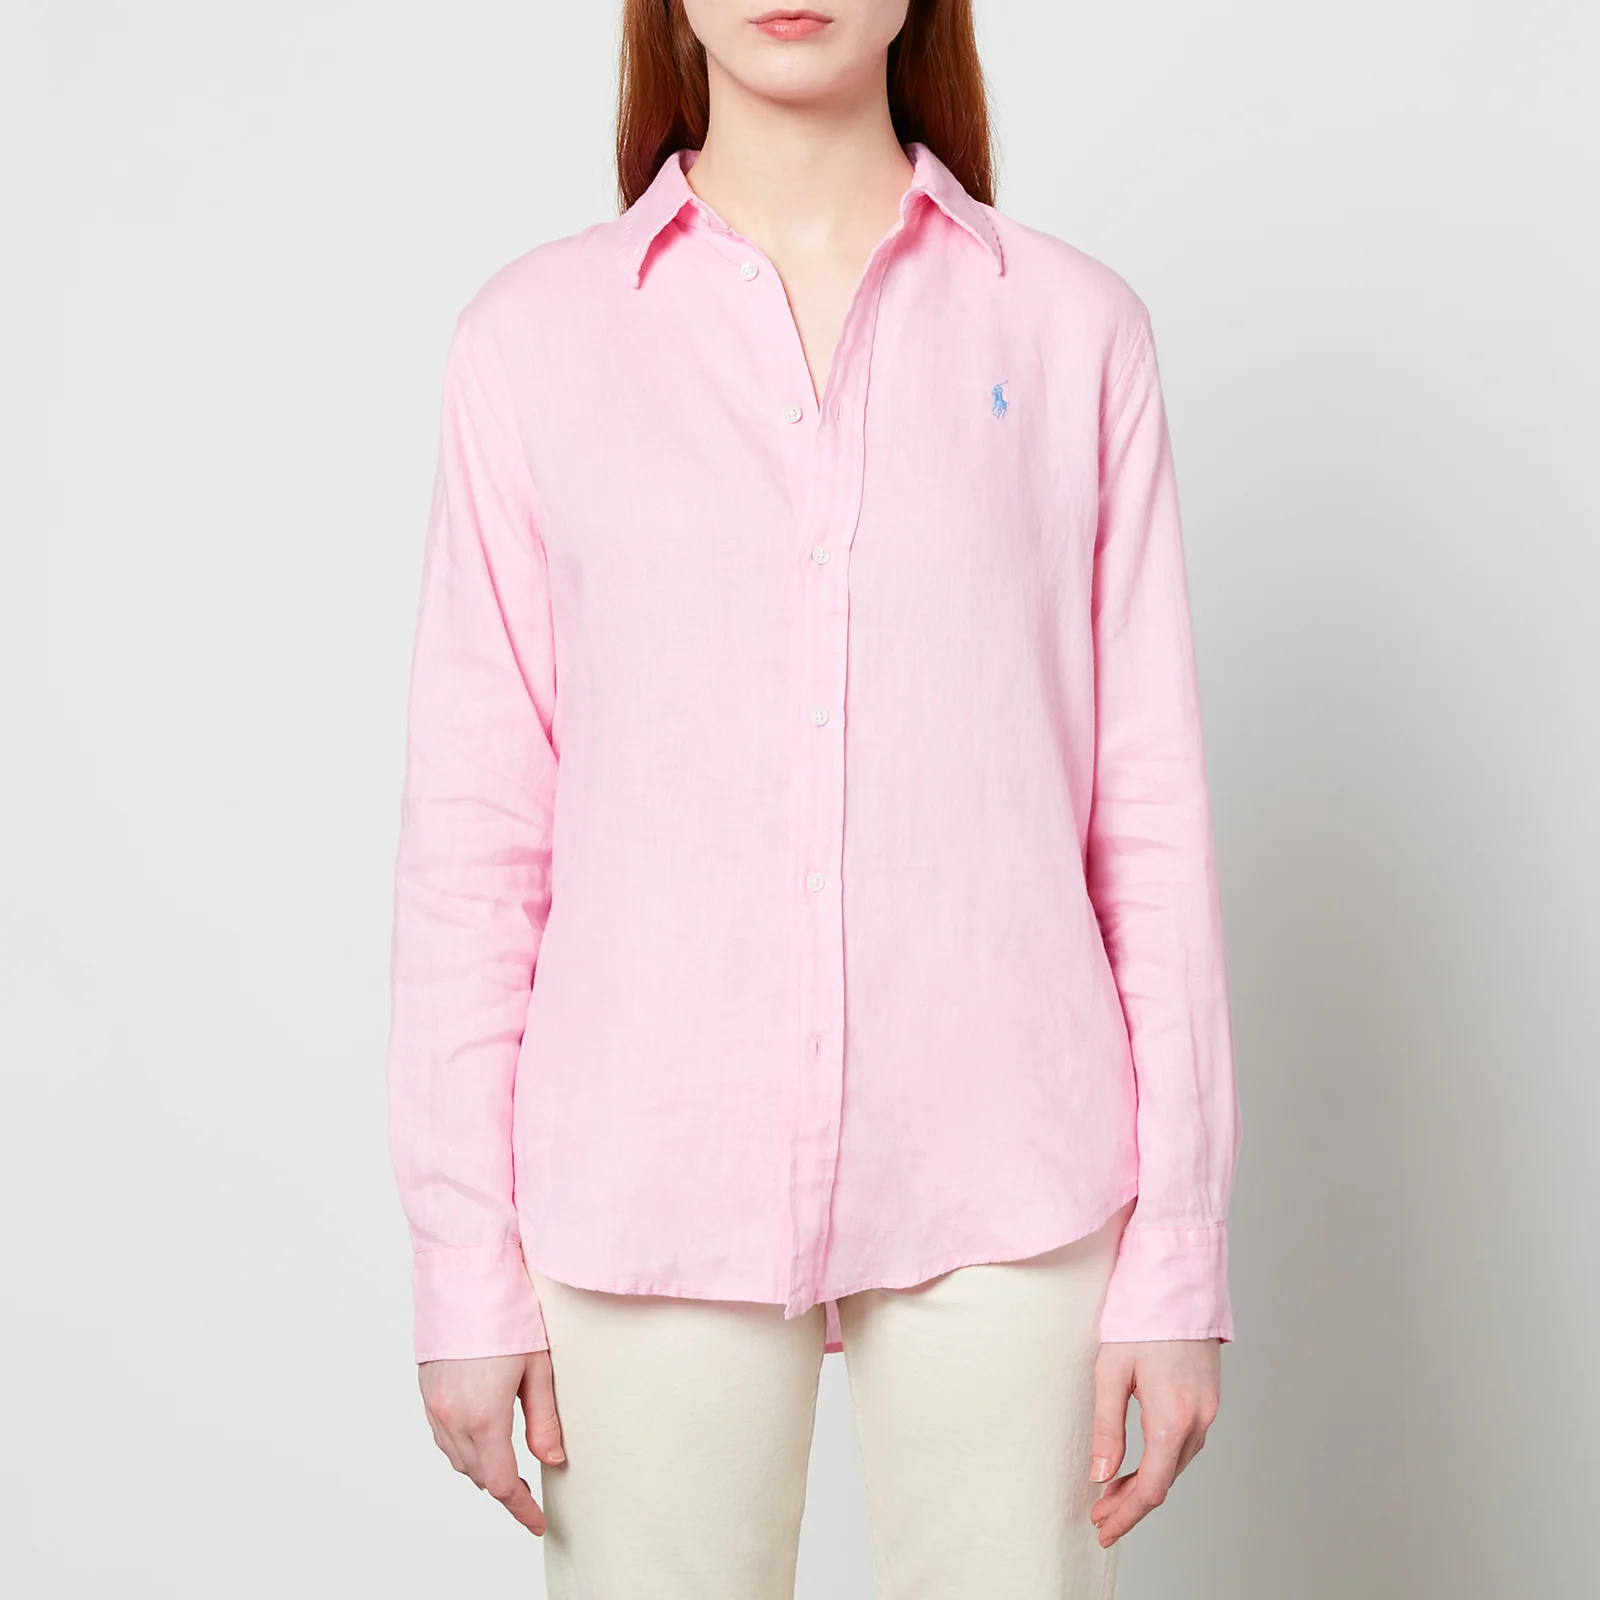 Polo Ralph Lauren Women's Relaxed Long Sleeve Shirt - Carmel Pink Image 1